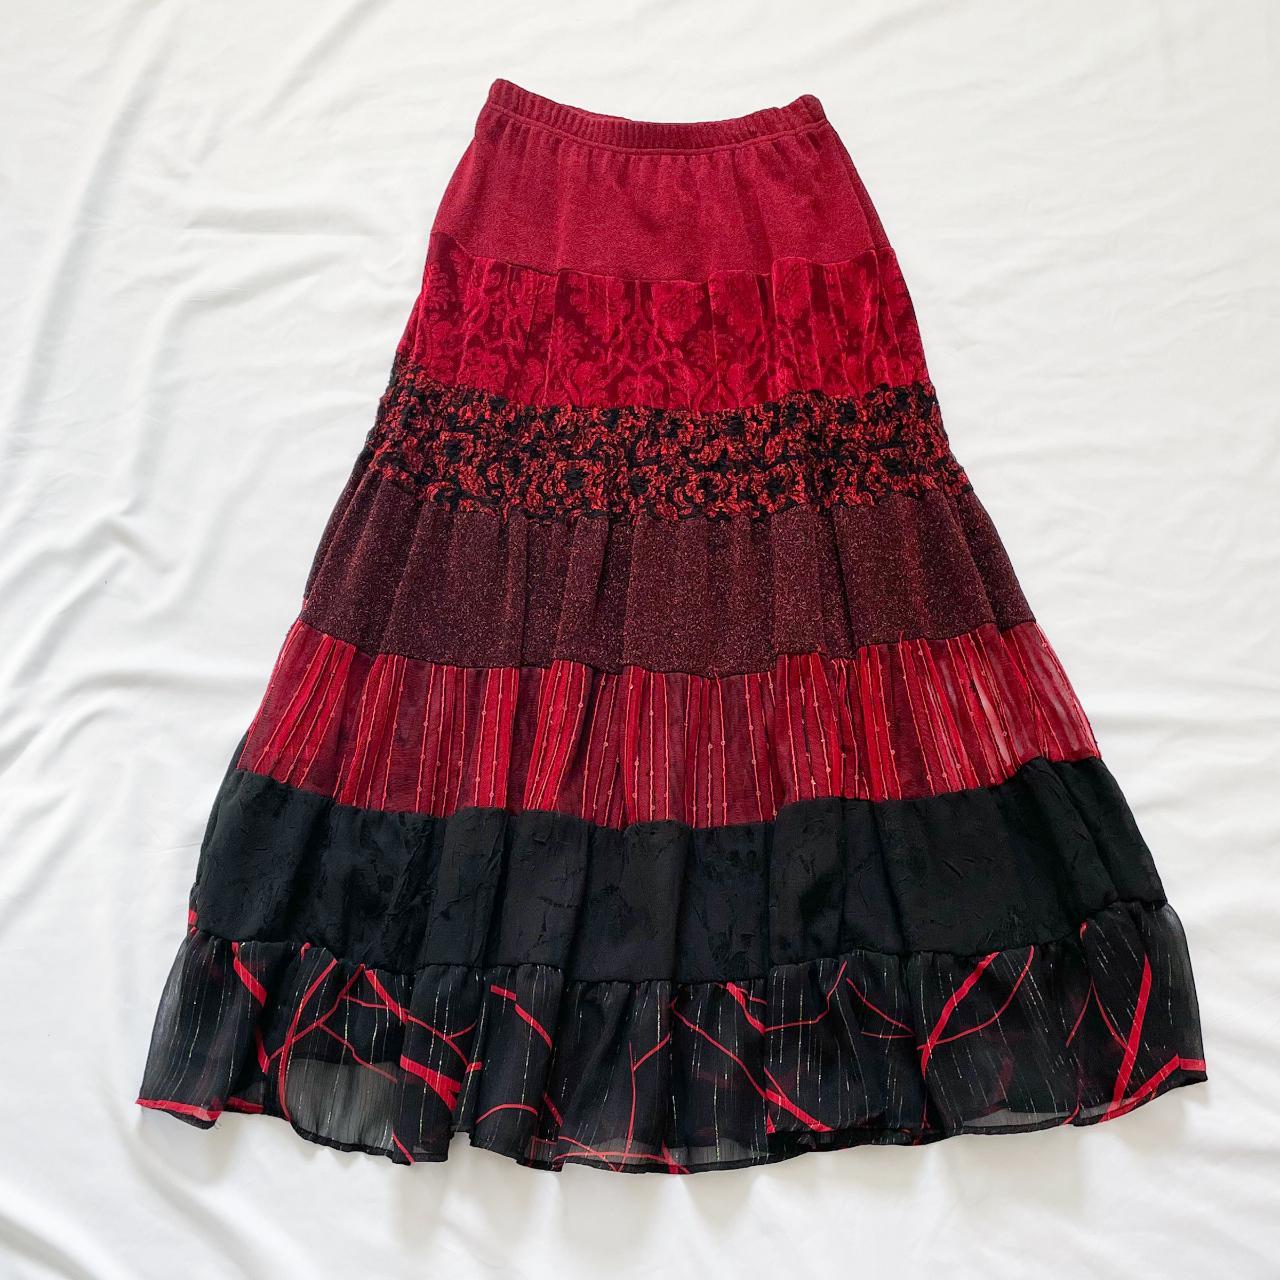 90s Grunge Red Maxi Skirt Vintage 1990s high... - Depop